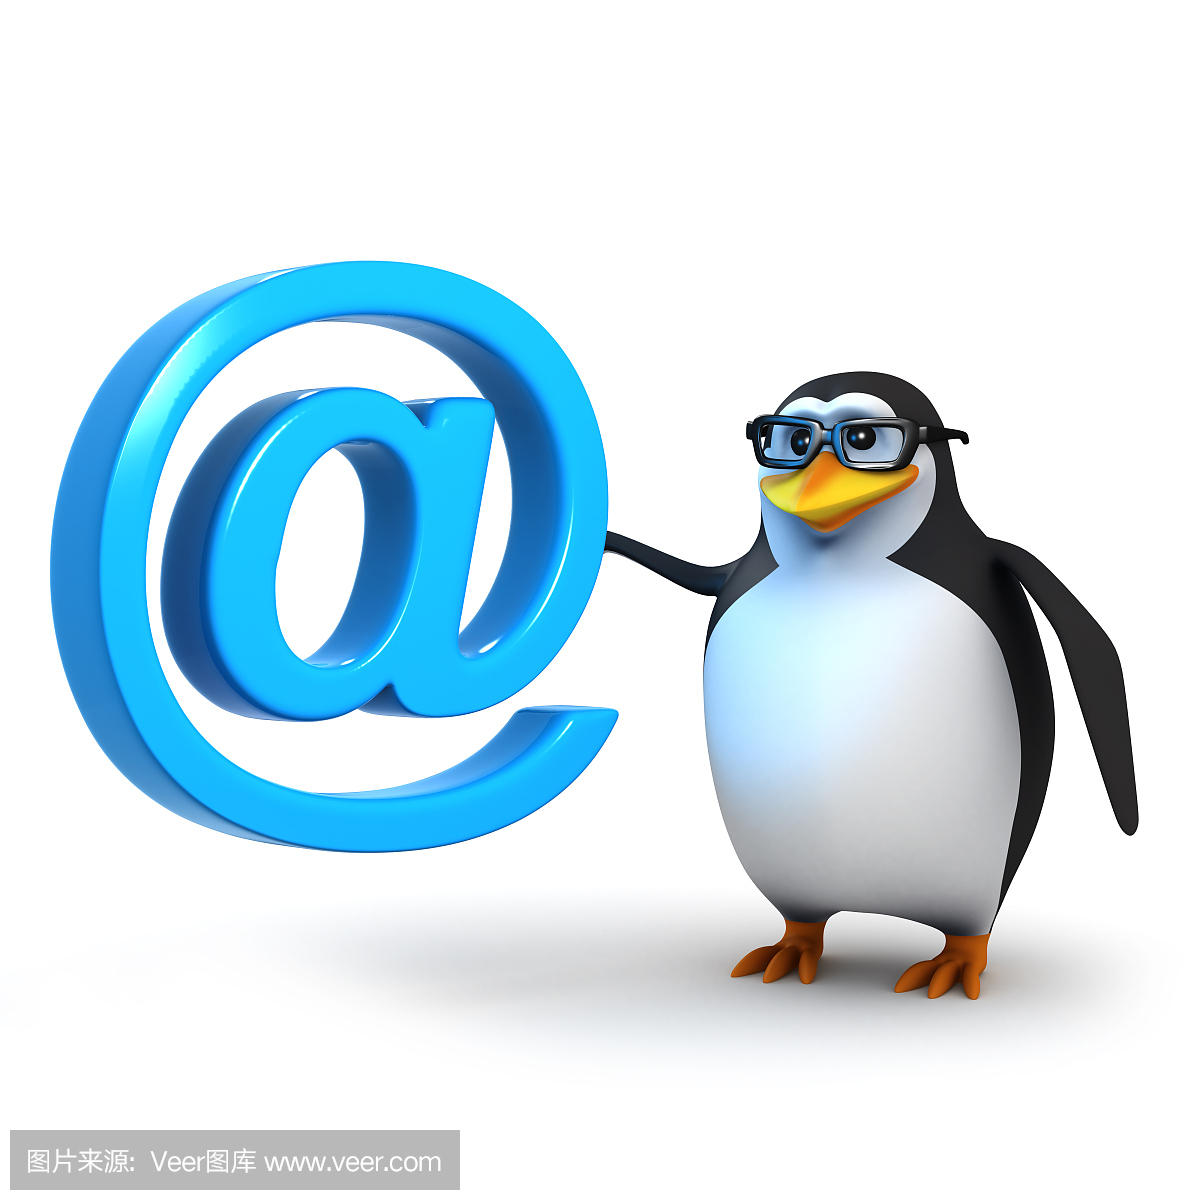 3d企鹅有一个电子邮件地址符号